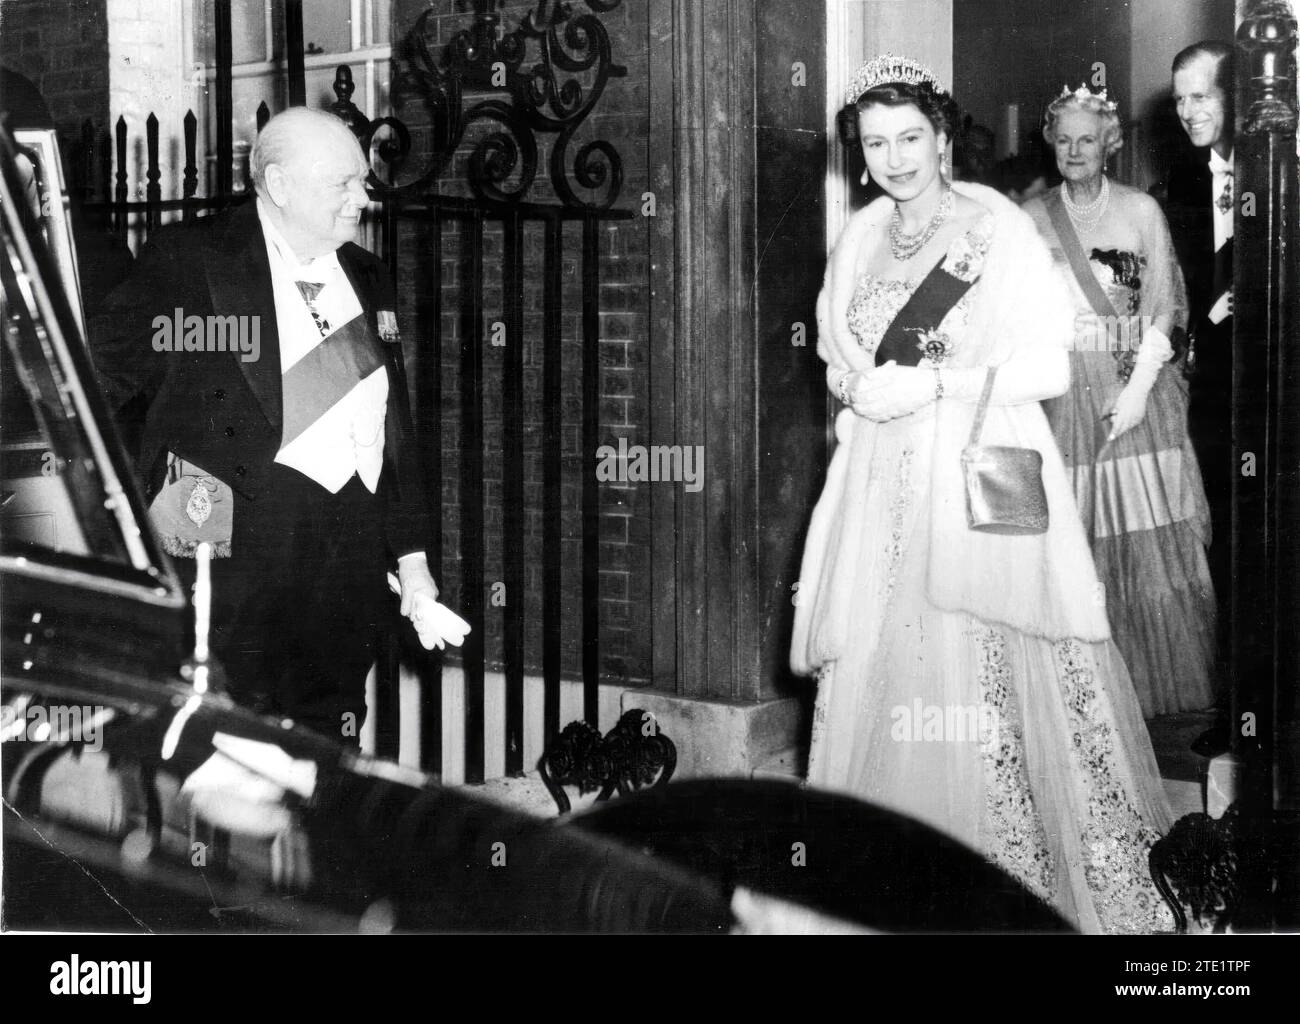 Londra (Regno Unito), 04/04/1955. La regina Elisabetta II d'Inghilterra lascia 10 Downing Street, dove ha partecipato ad un pranzo organizzato dal primo ministro, Winston Churchill, un giorno prima che presentasse le sue dimissioni. Nell'immagine, il primo ministro tiene la porta dell'auto del sovrano. Dietro di voi potete vedere il Duca di Edimburgo e Lady Churchill http://www.abc.es/abcfoto/galerias/20150212/abci-fotografias-reina-isabel-201502111820.html. Crediti: Album / Archivo ABC / Keystone Foto Stock